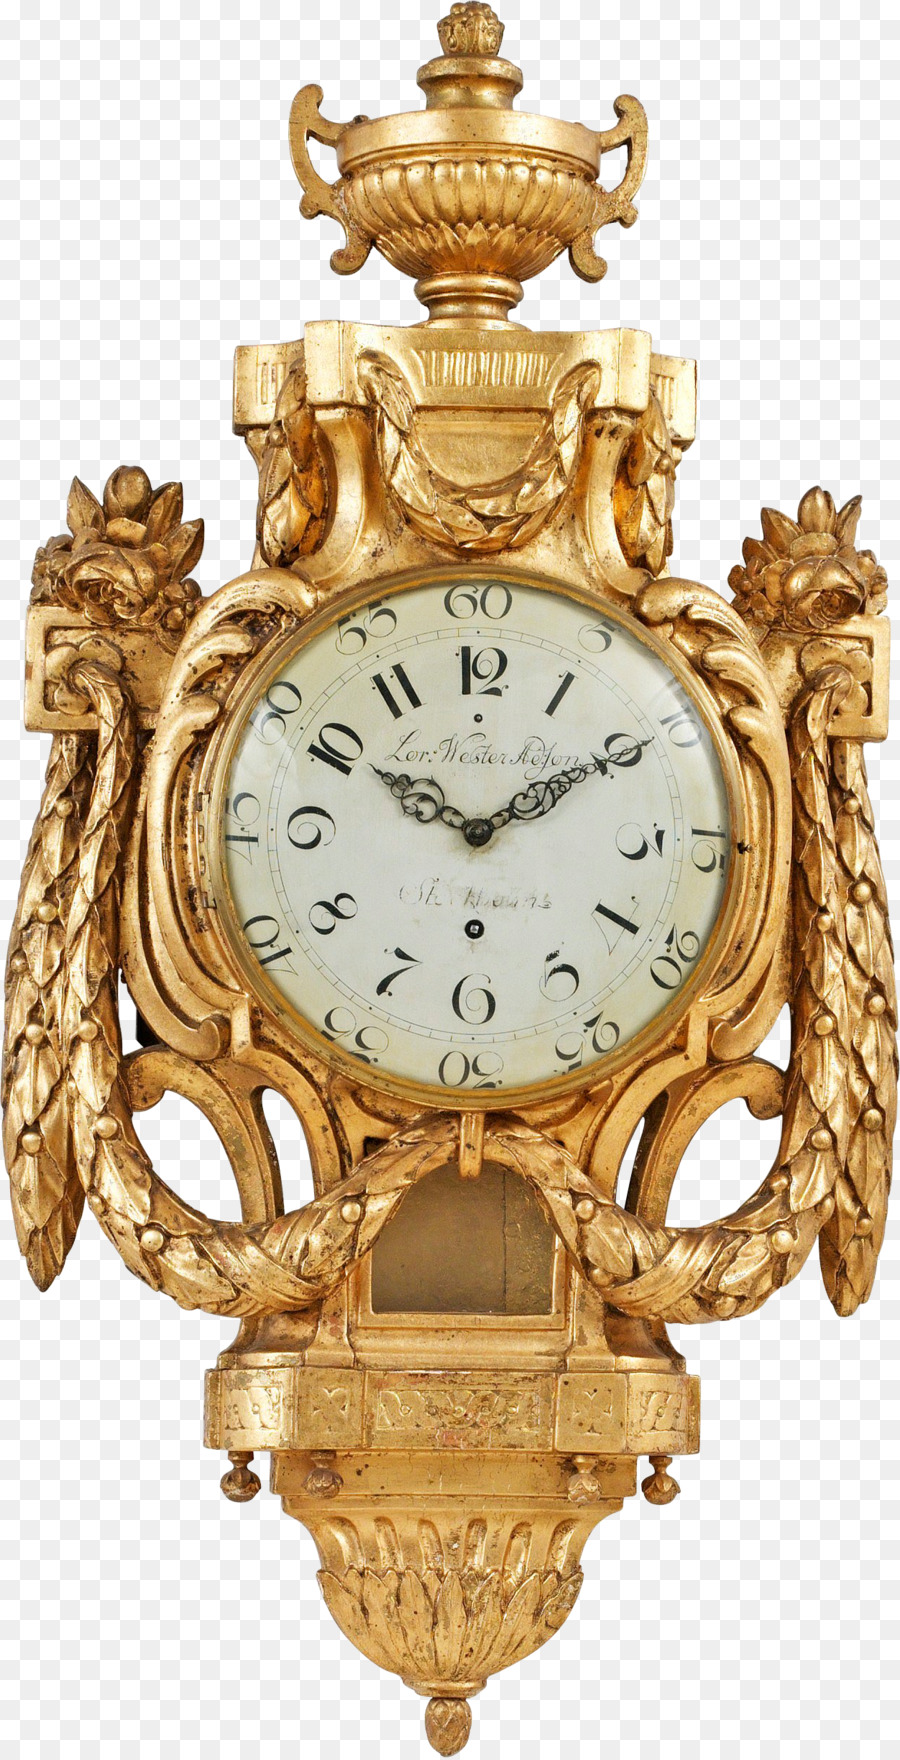 Pendel-Uhr-Wecker-Uhr - gold Uhren